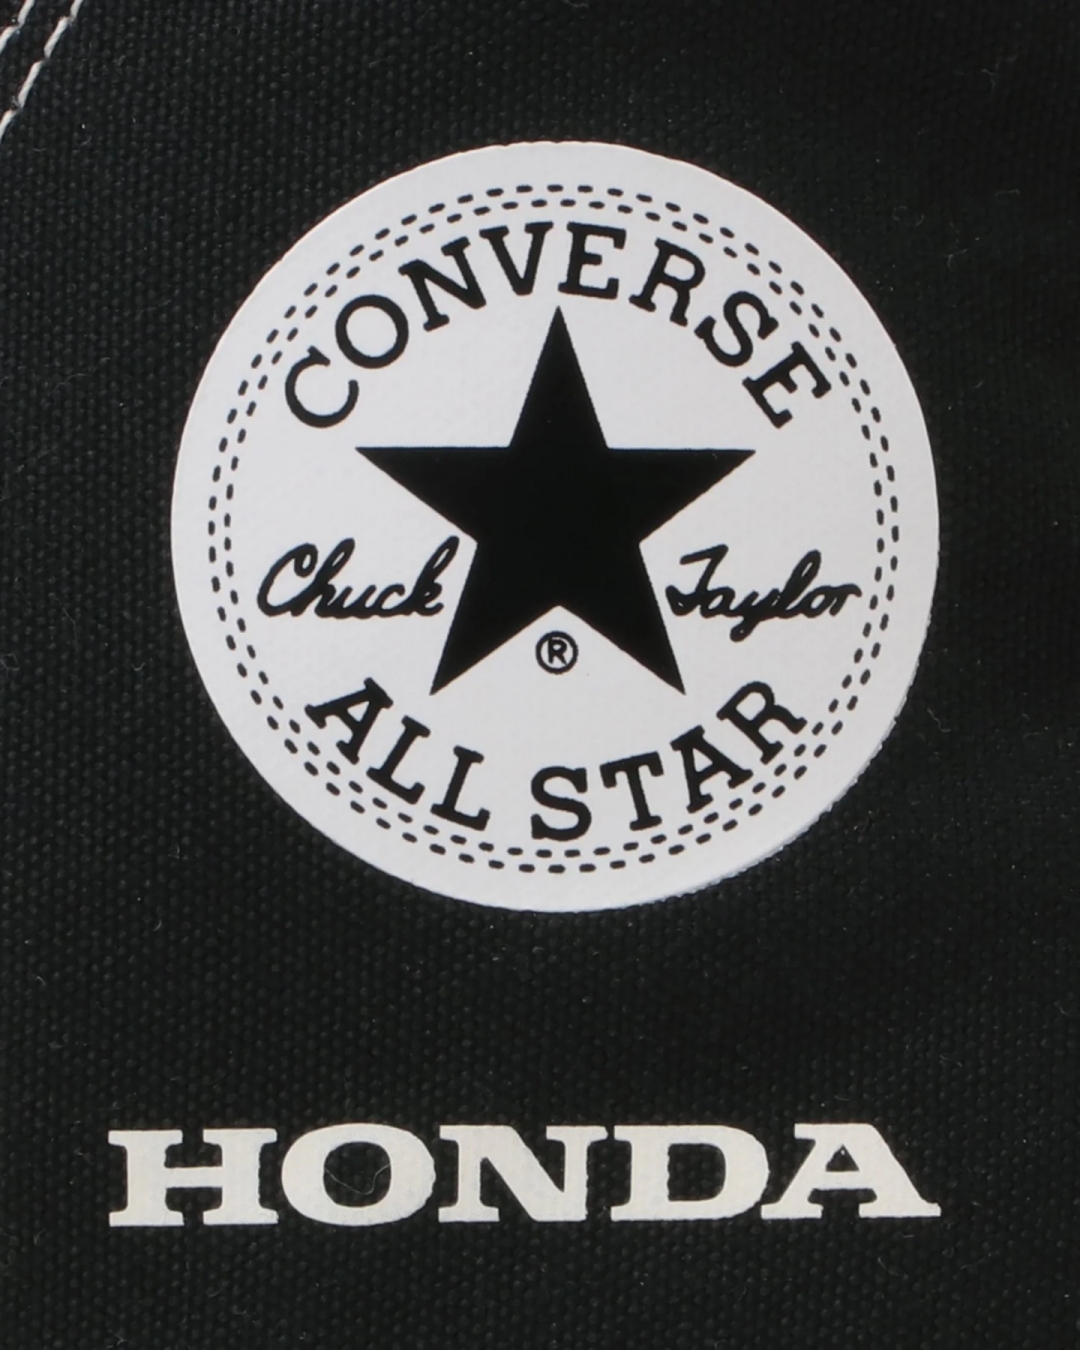 【国内 10/24 発売】HONDA × CONVERSE ALL STAR (R) RS HI/WP HI (ホンダ コンバース オールスター)